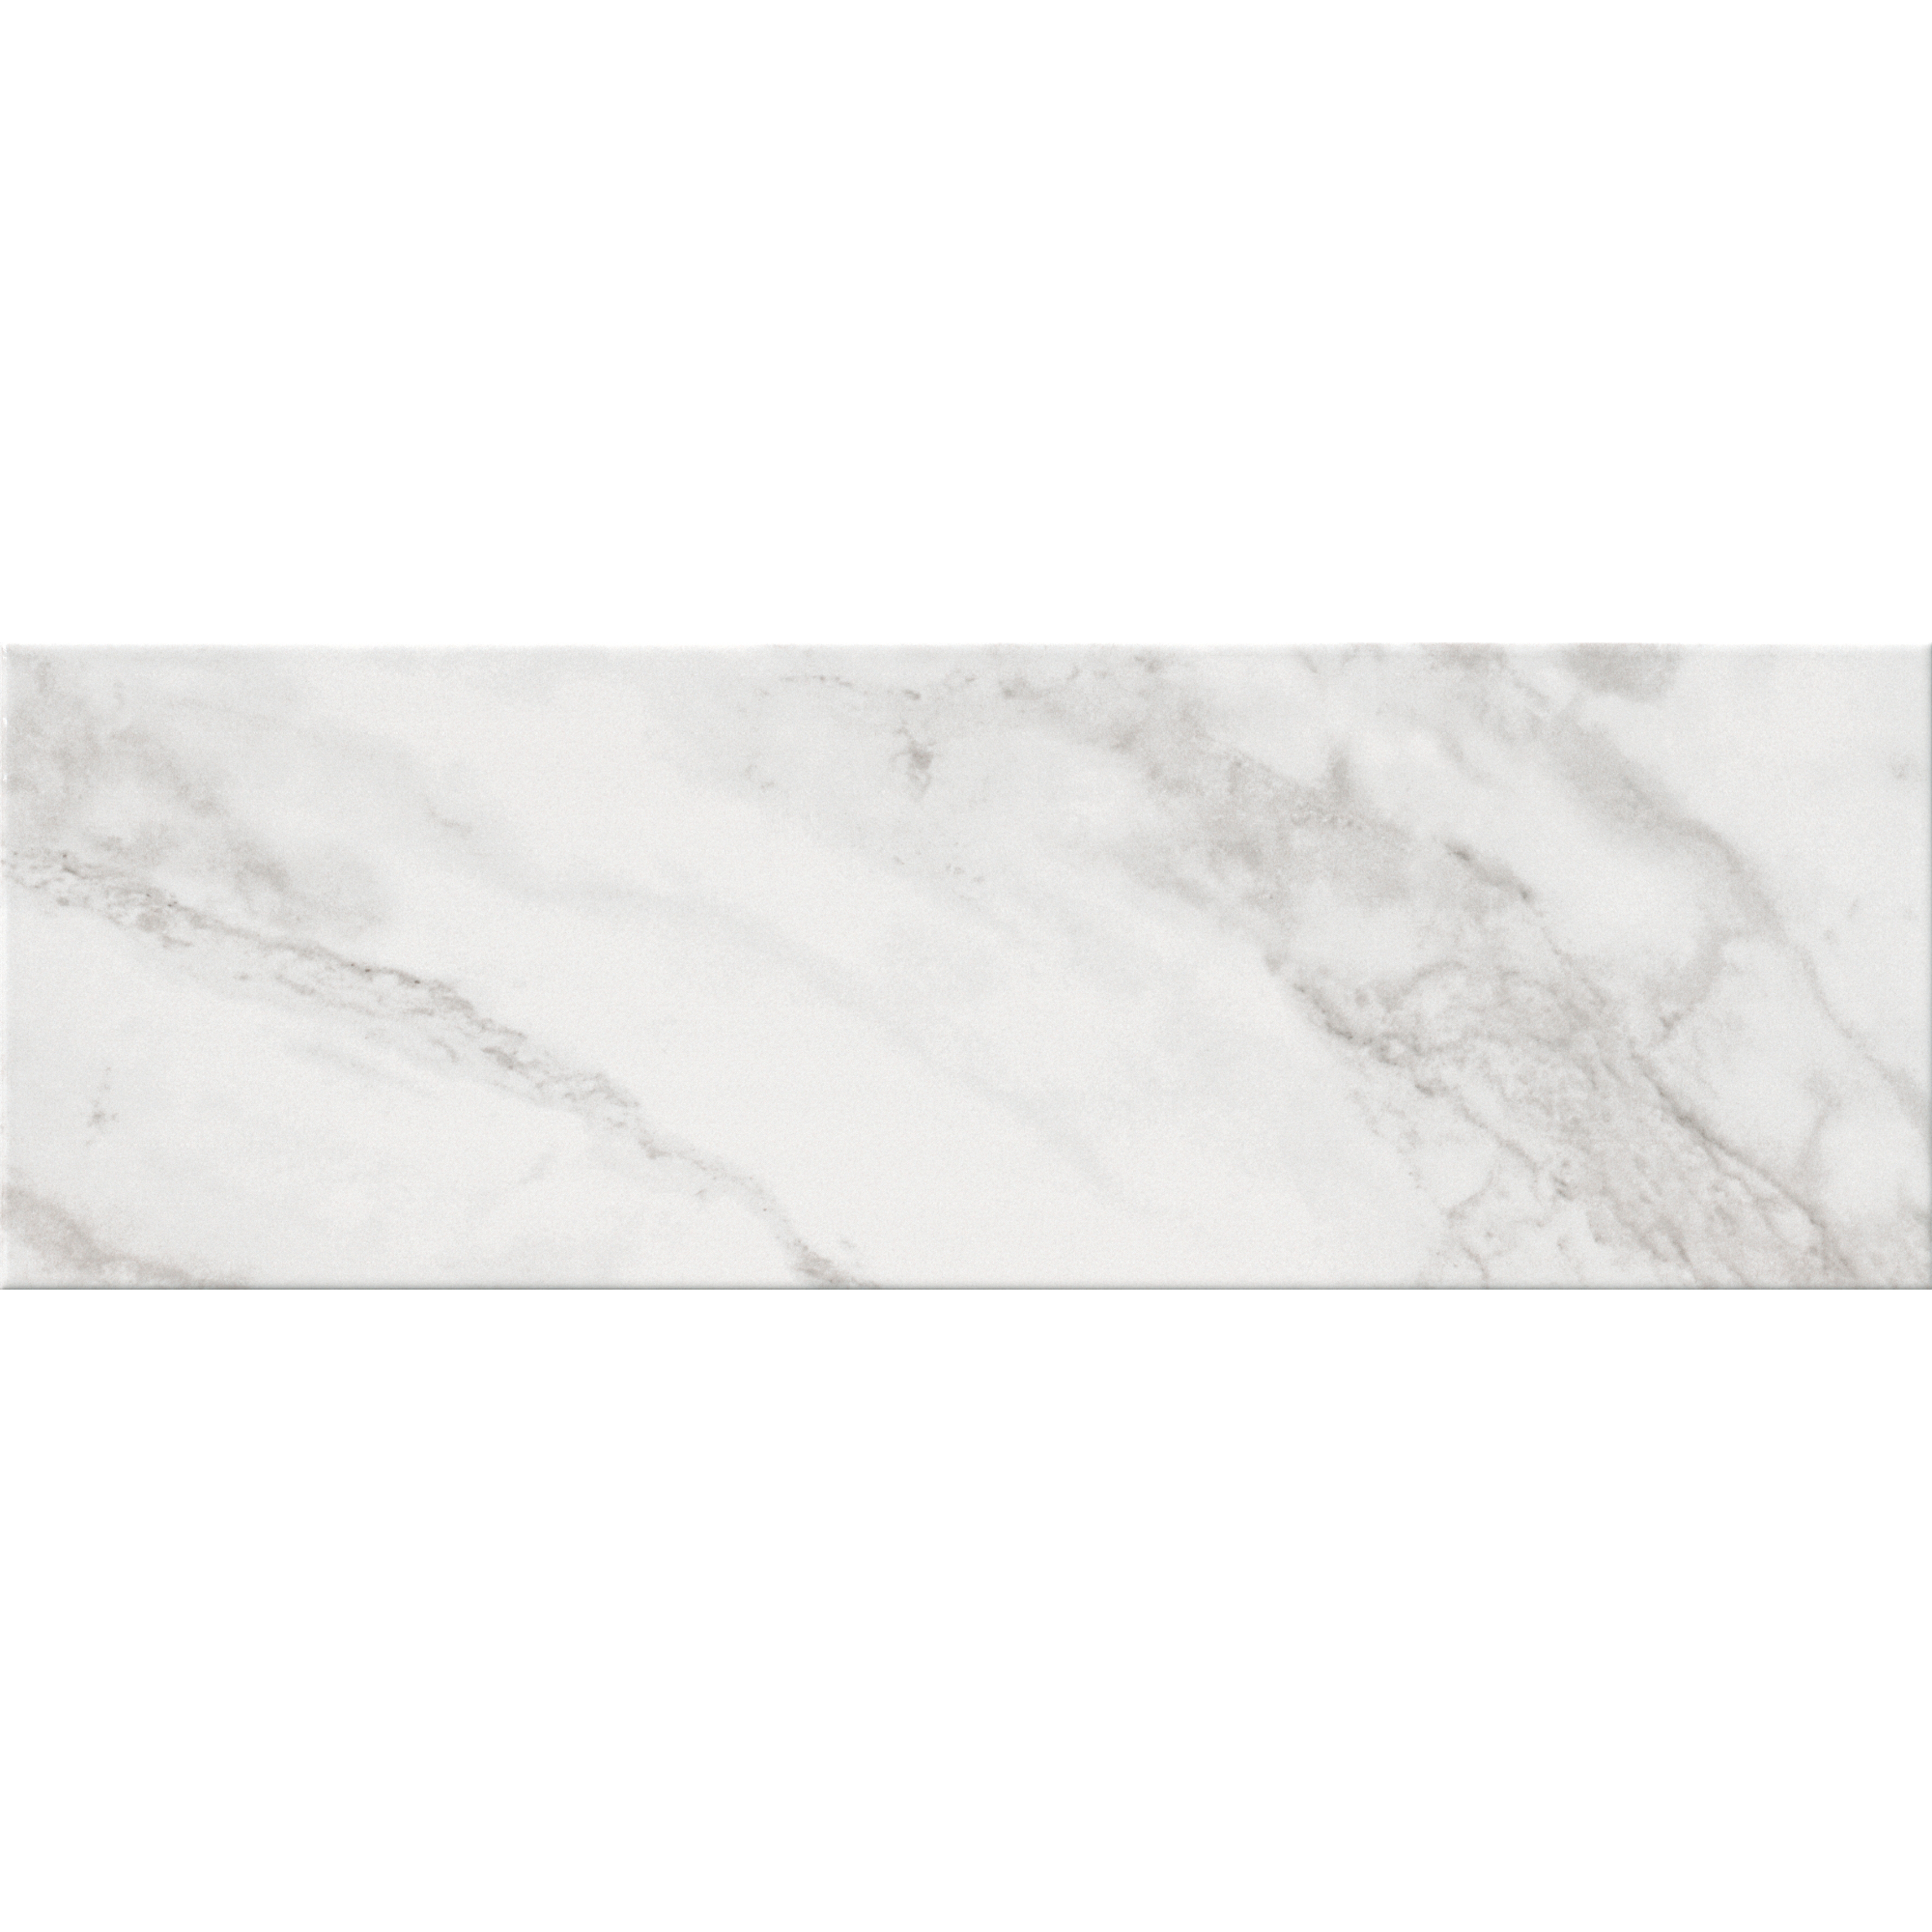 Umbria White Gls 20x60cm